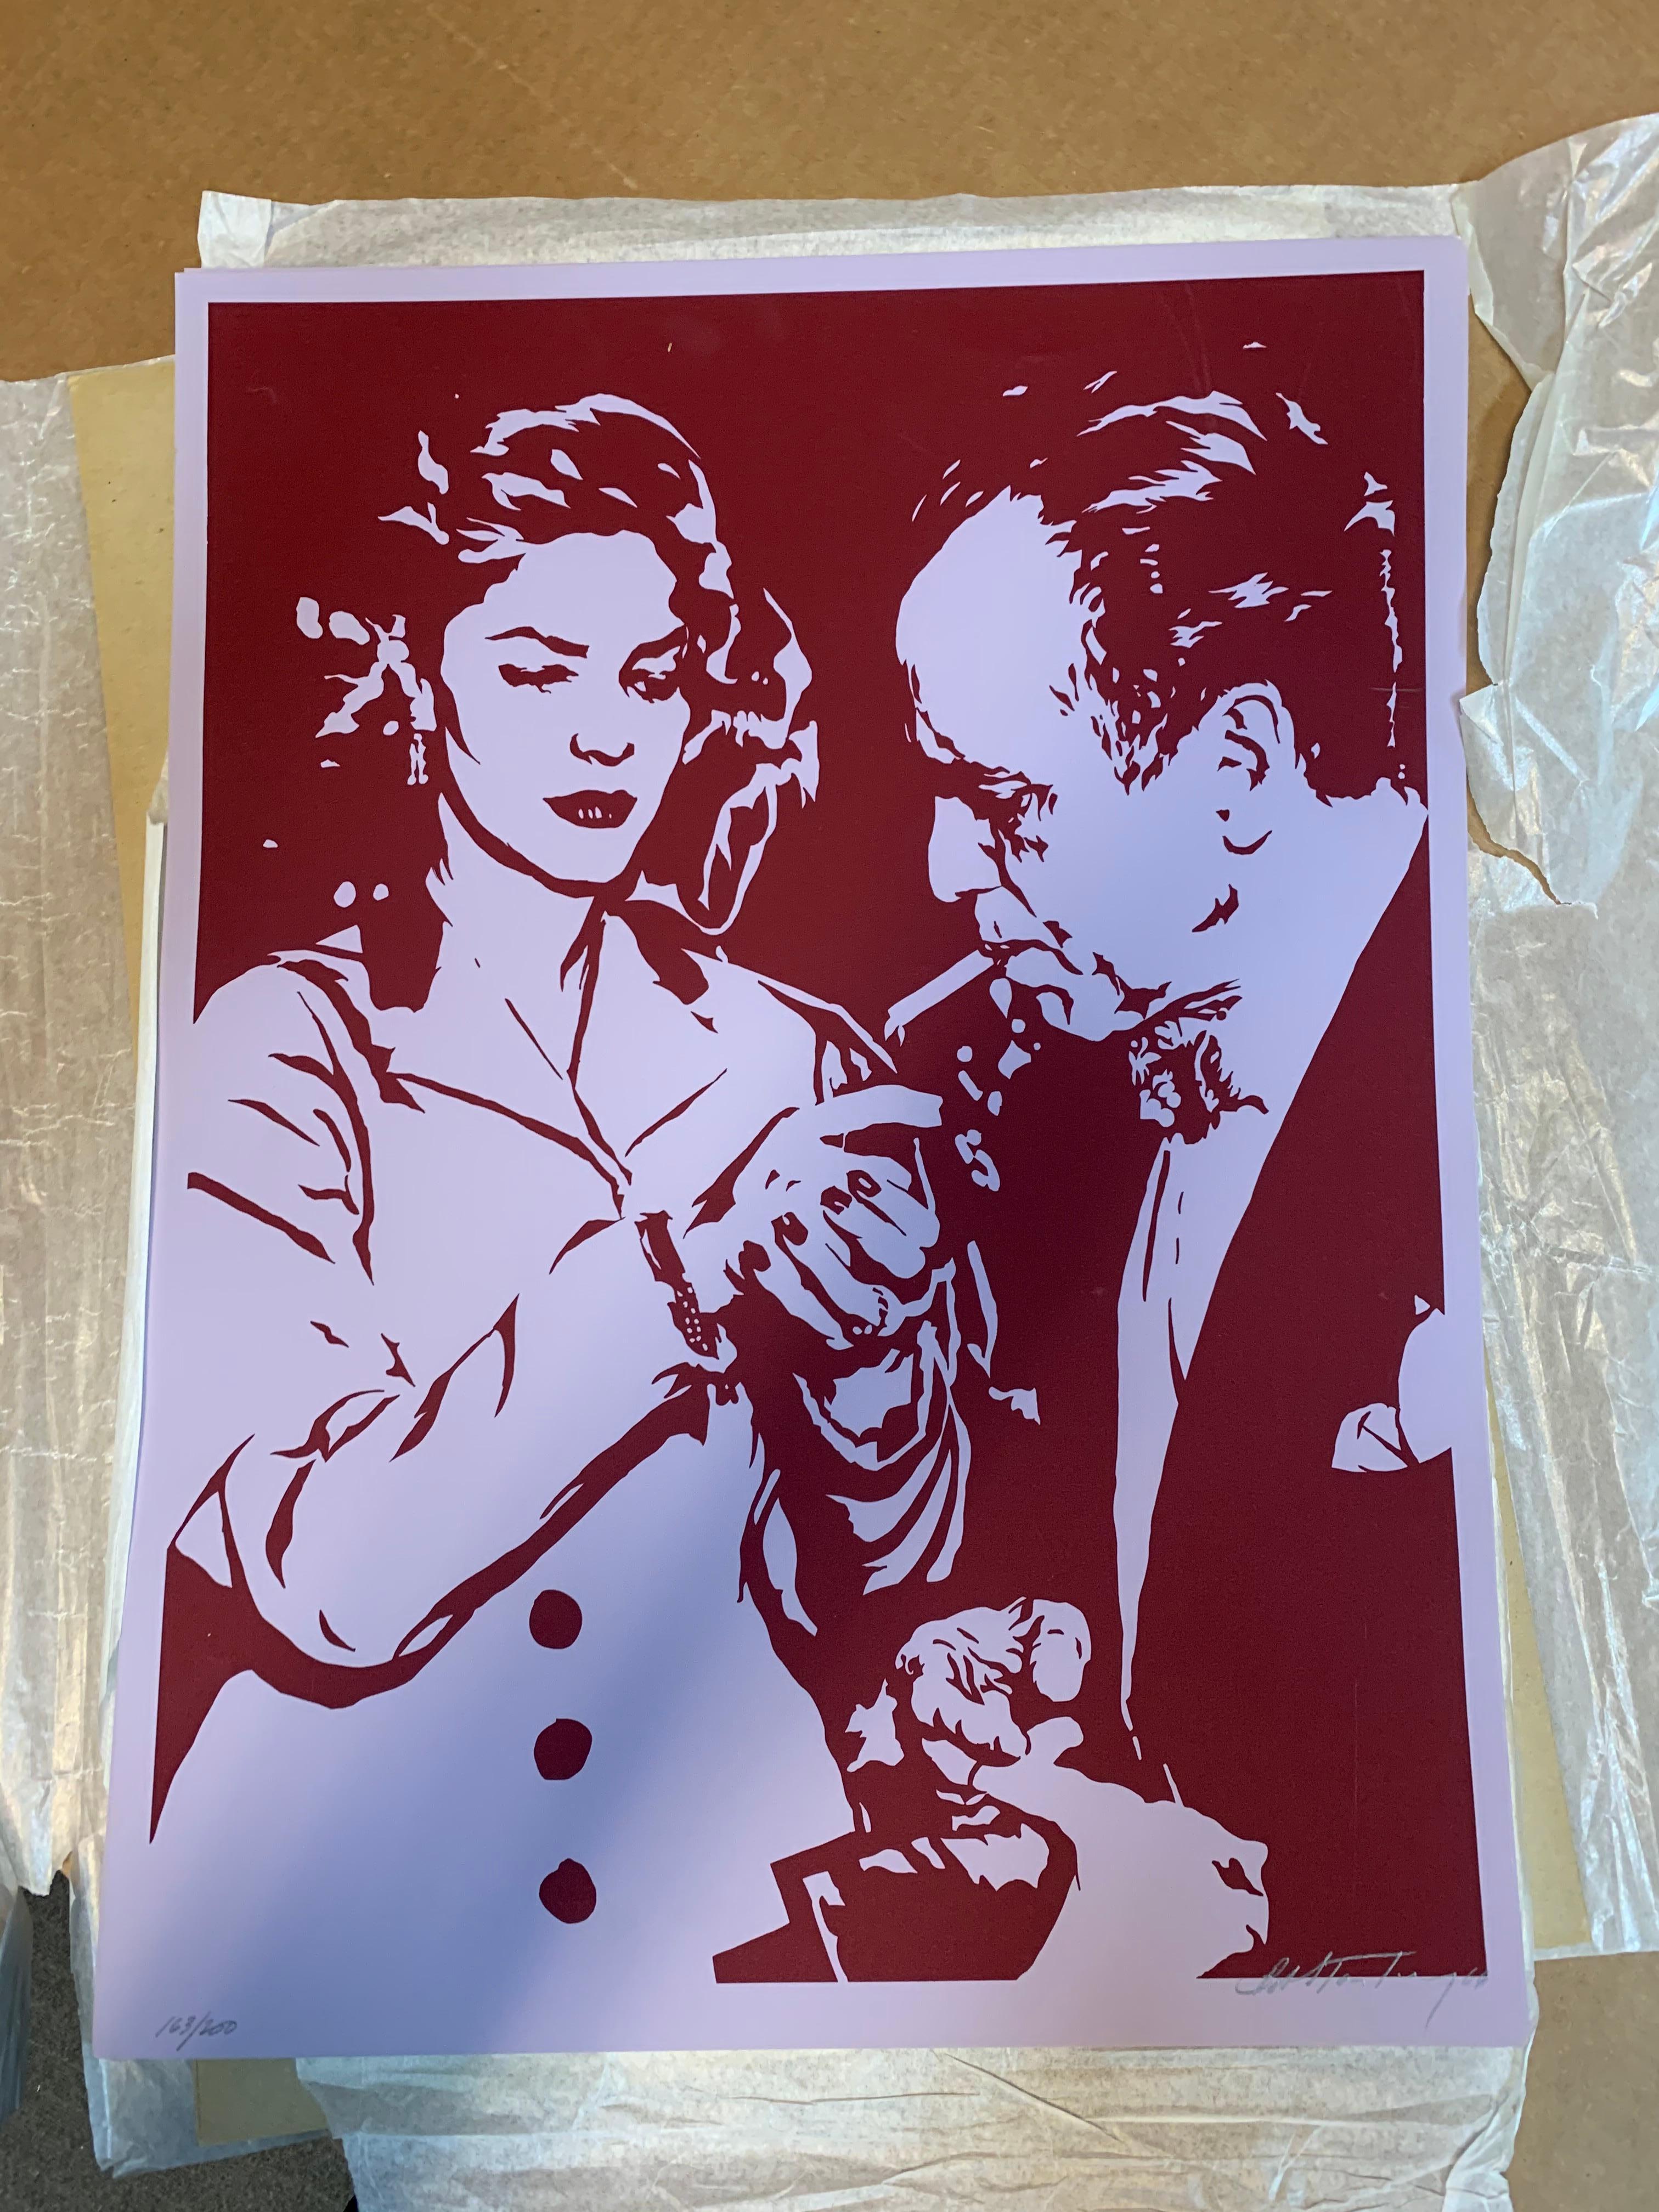 Bob Stanley
Lauren Bacall allume la cigarette de Humphrey Bogart, 1966
Sérigraphie couleur sur papier avec marges complètes
22 1/2 × 17 pouces
Edition de 200
Signé et daté à la main en bas à droite sur le devant ; numéroté en bas à gauche sur le